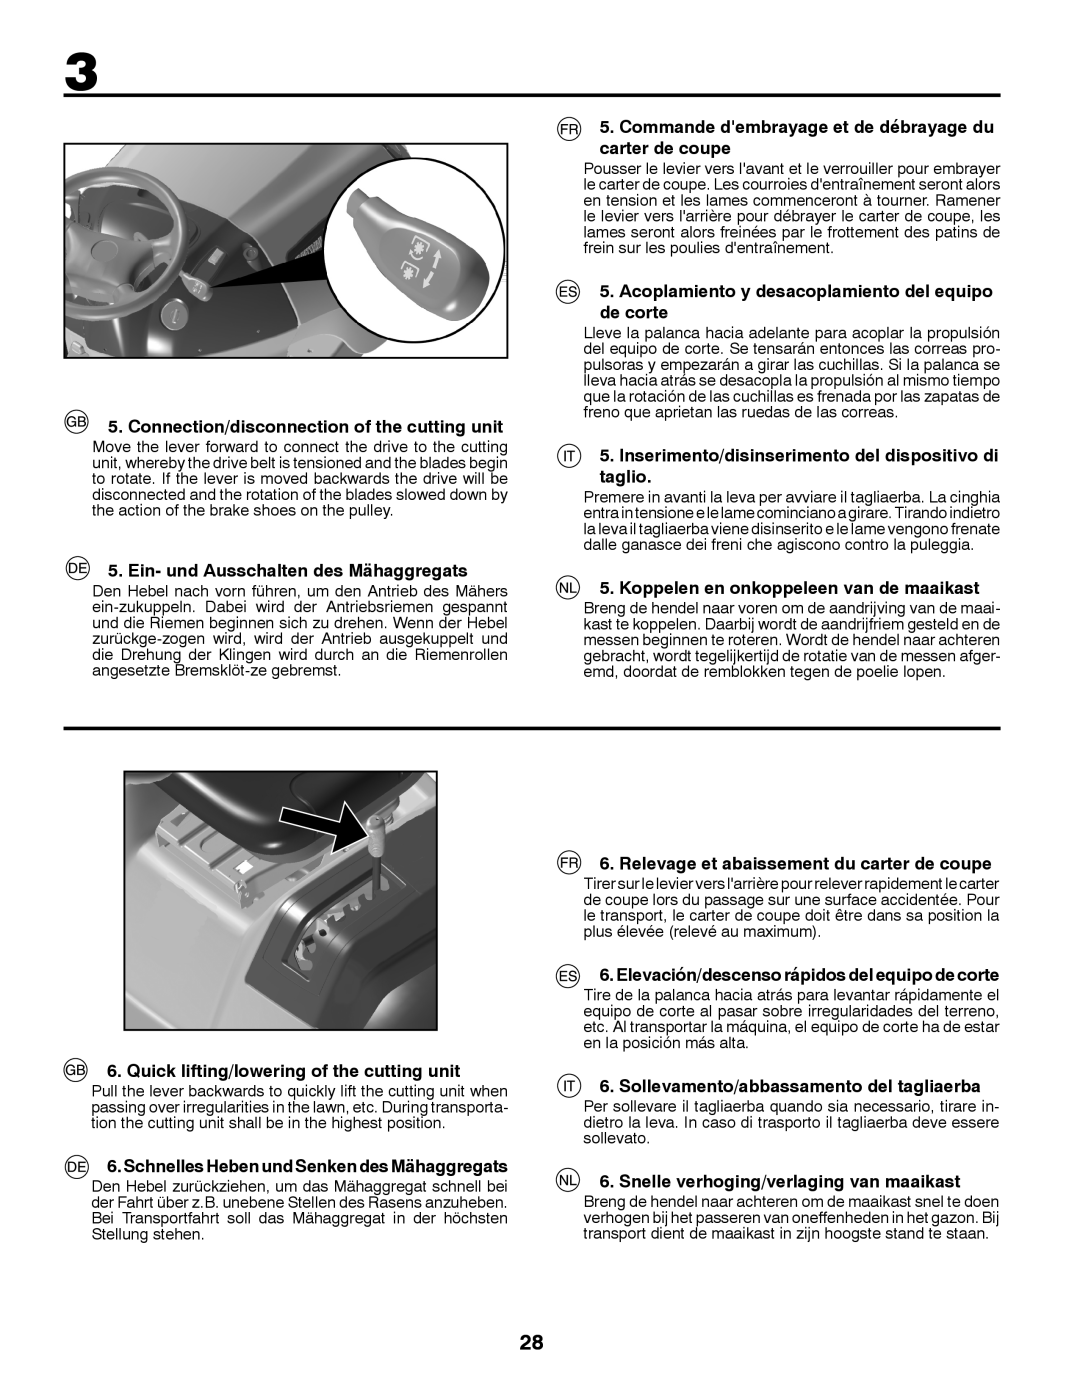 Husqvarna LT126 Connection/disconnection of the cutting unit, Commande dembrayage et de débrayage du carter de coupe 